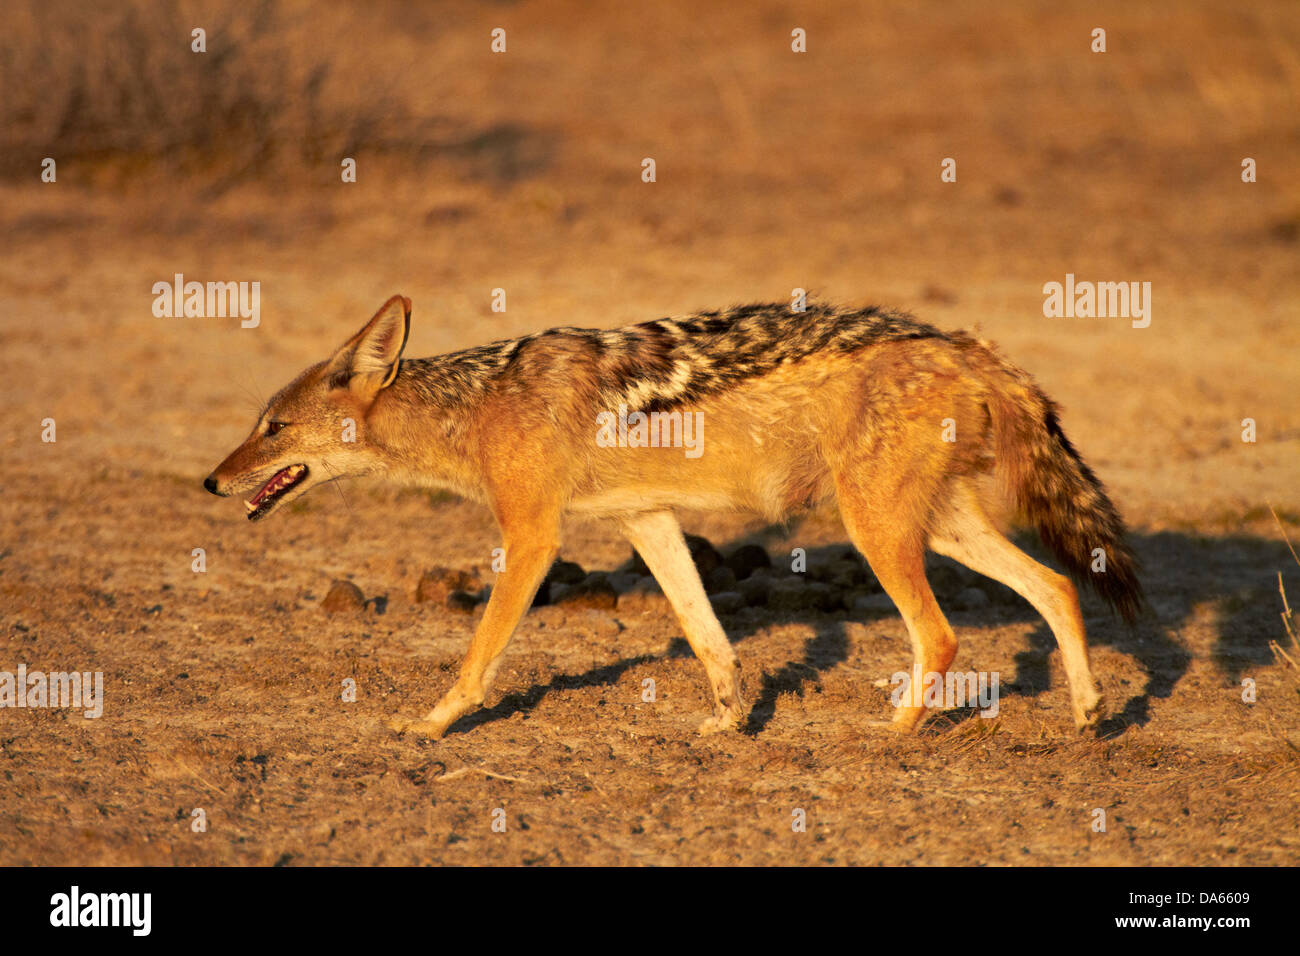 Black-backed jackal (Canis mesomelas), Etosha National Park, Namibia, Africa Stock Photo